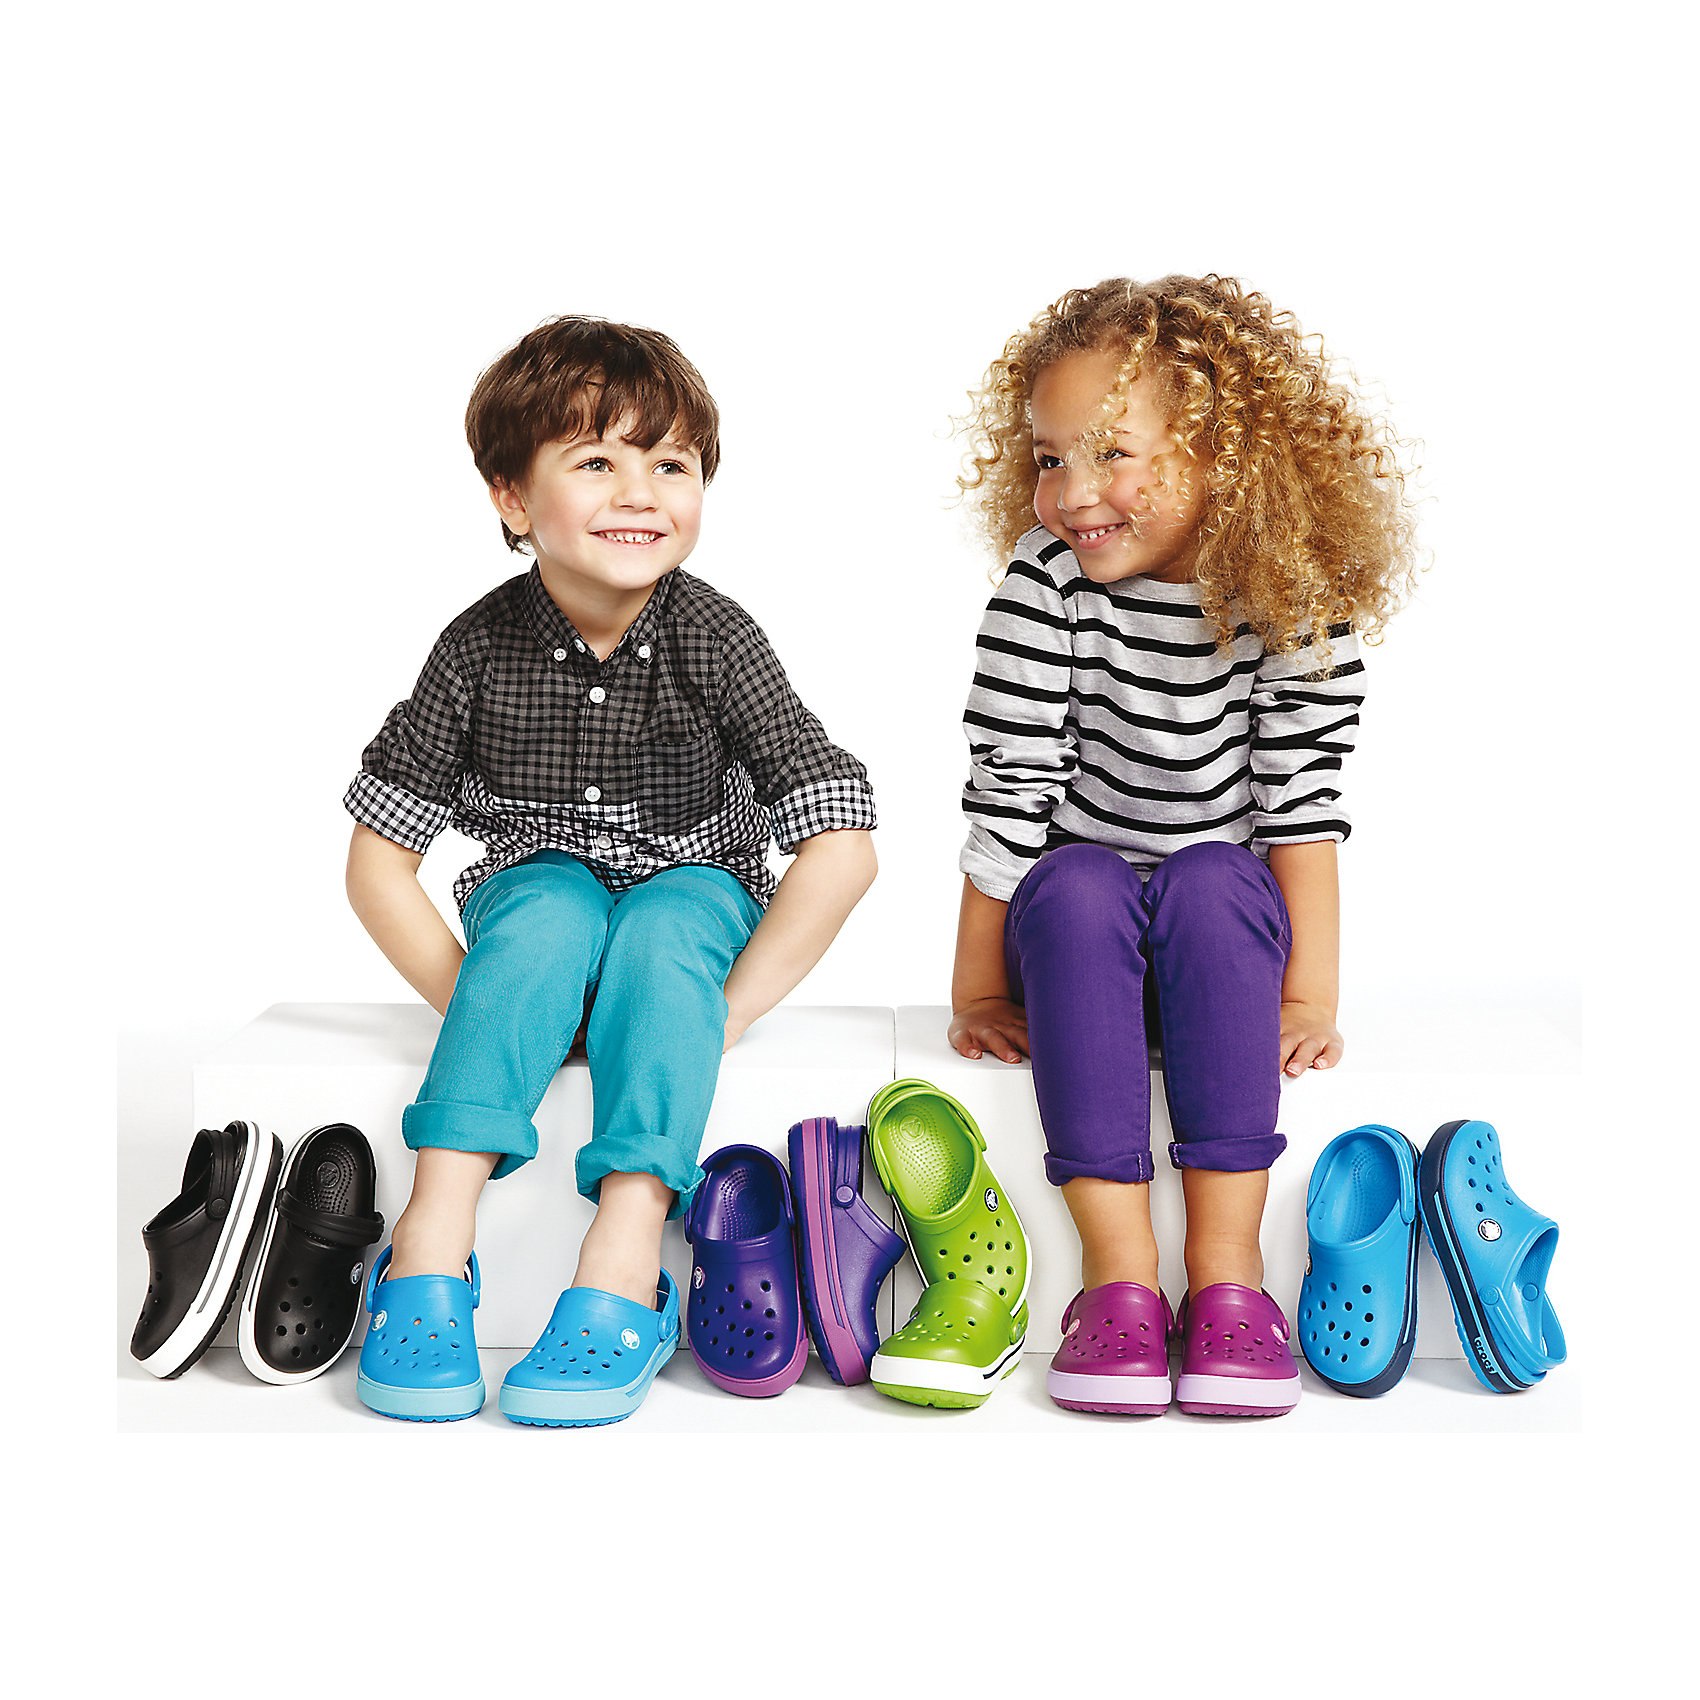 Лучшая обувь для малышей. Обувь для детей. Одежда и обувь для детей. Детская обувь реклама. Модная одежда для детей.